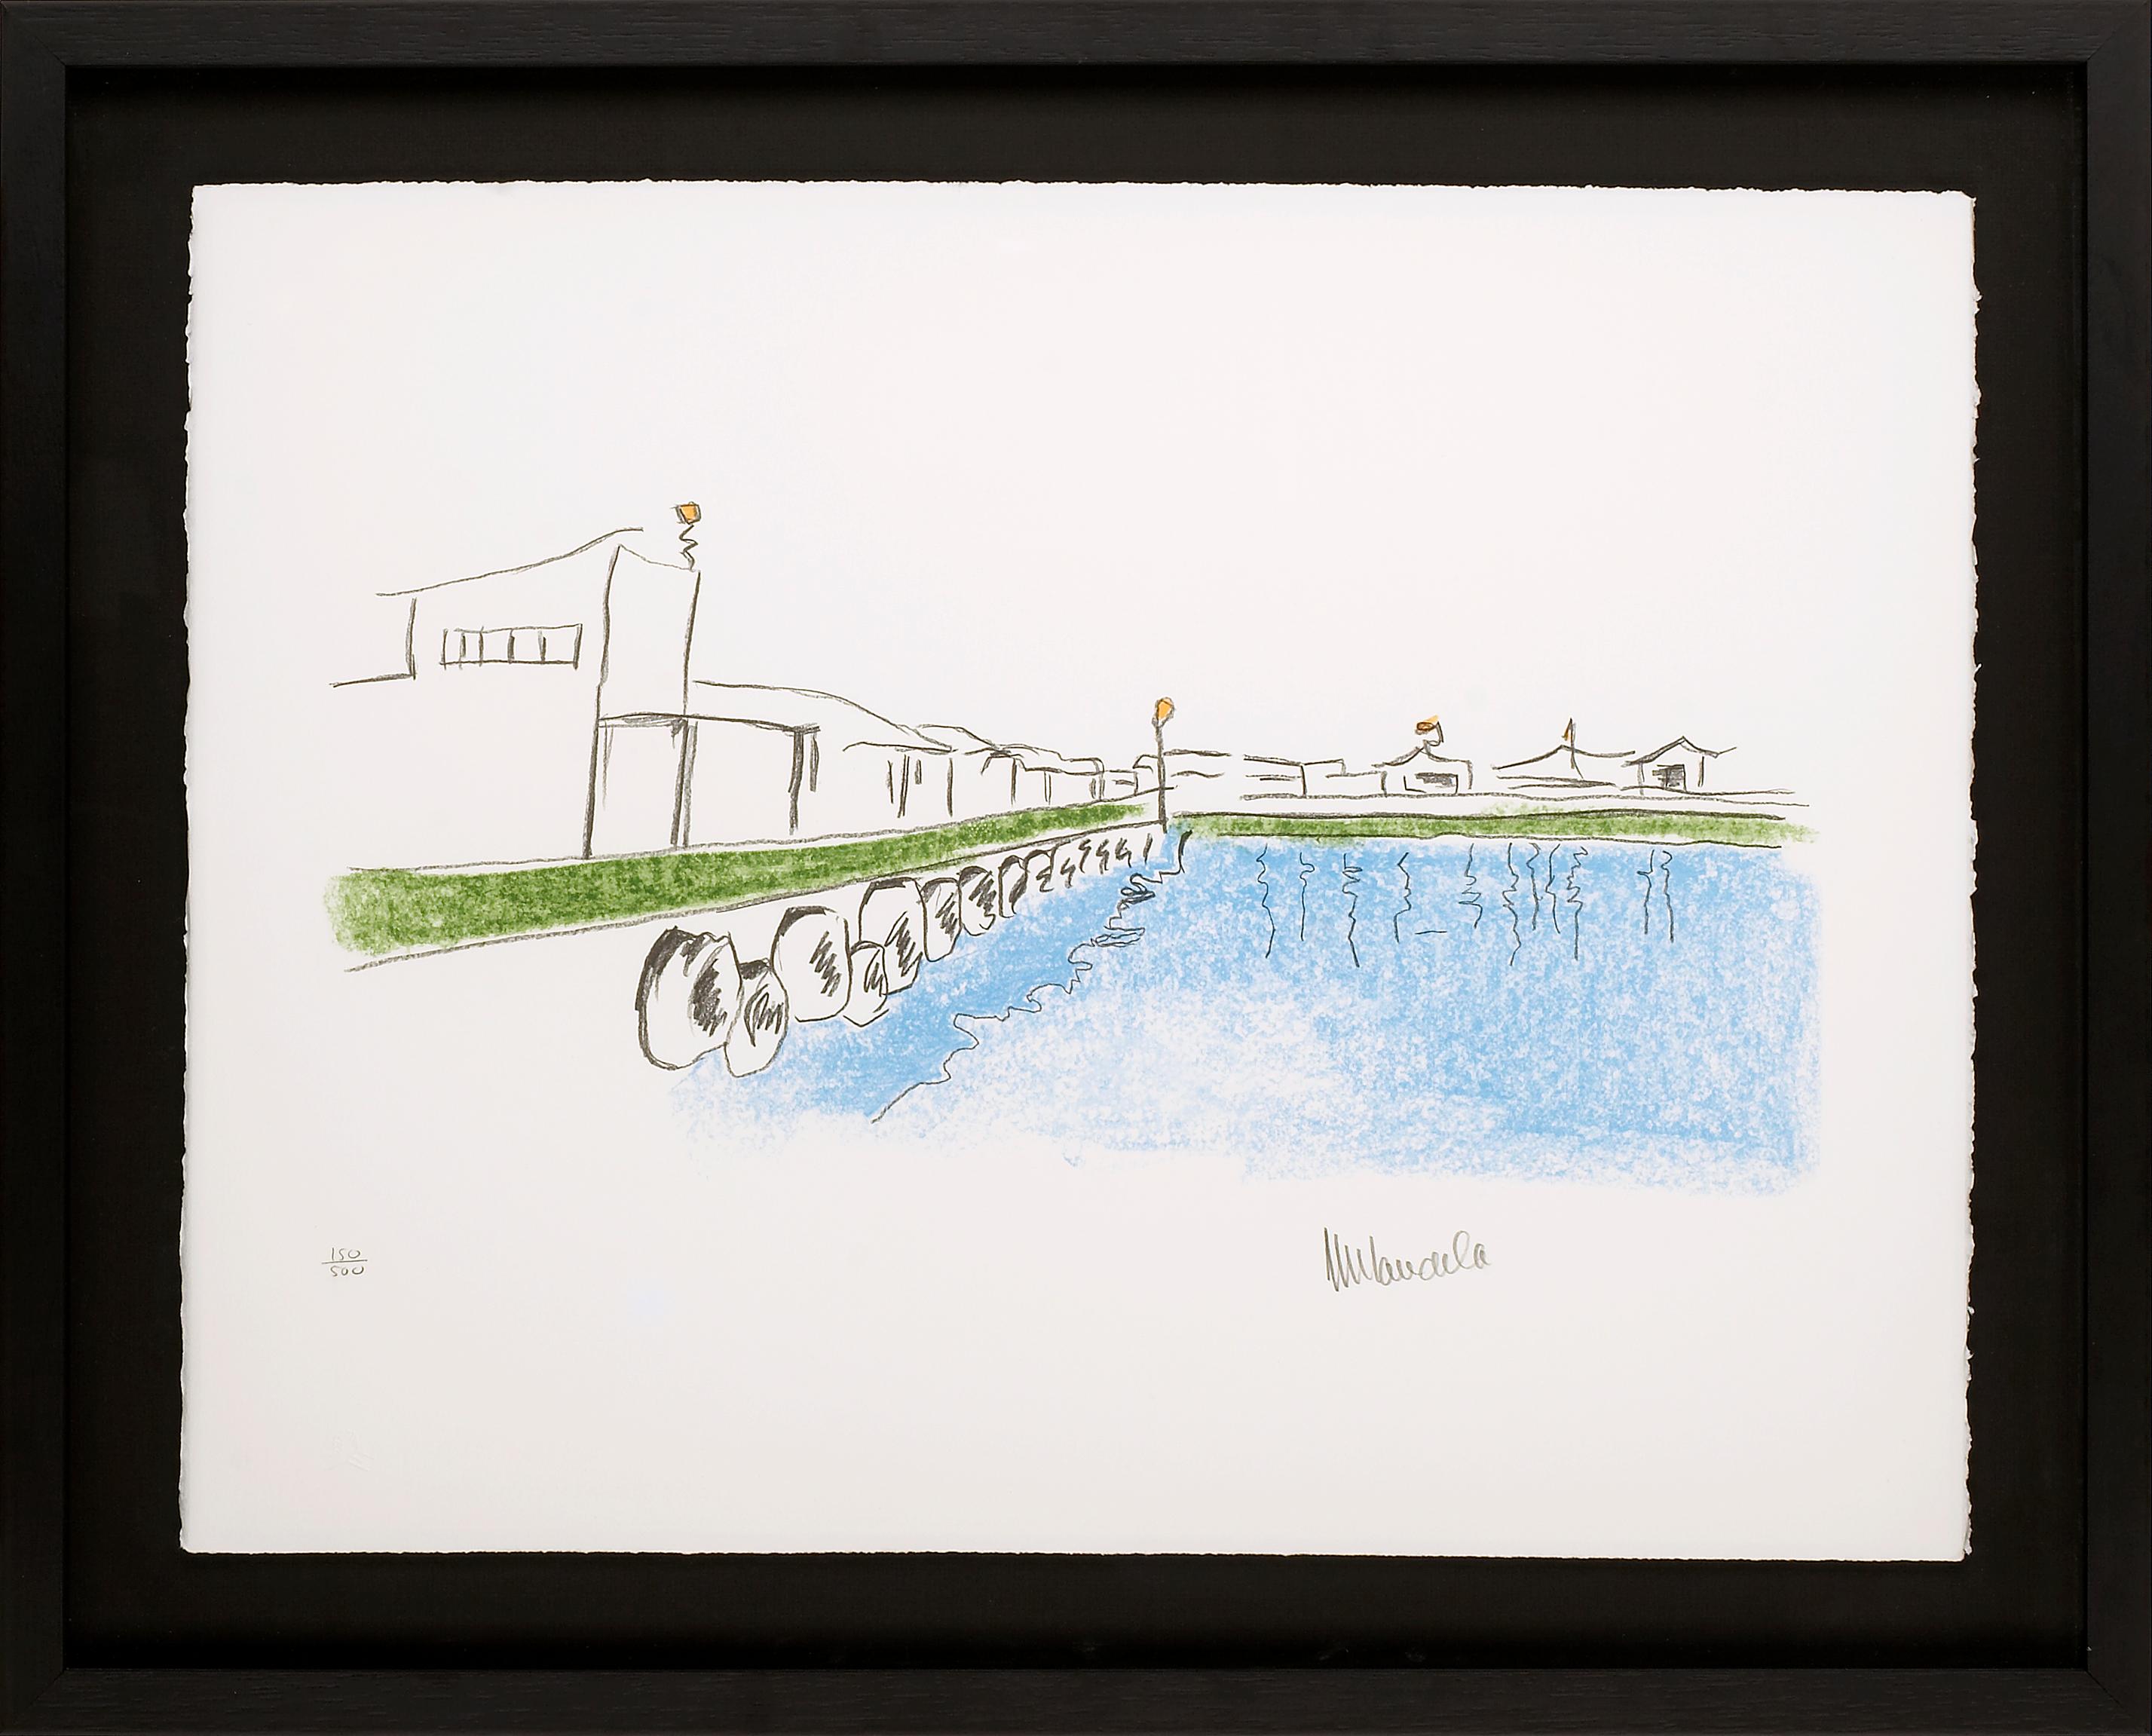 The Harbour - Mandela, ehemaliger südafrikanischer Präsident, signierte Kunst, Robben Island – Print von Nelson Mandela